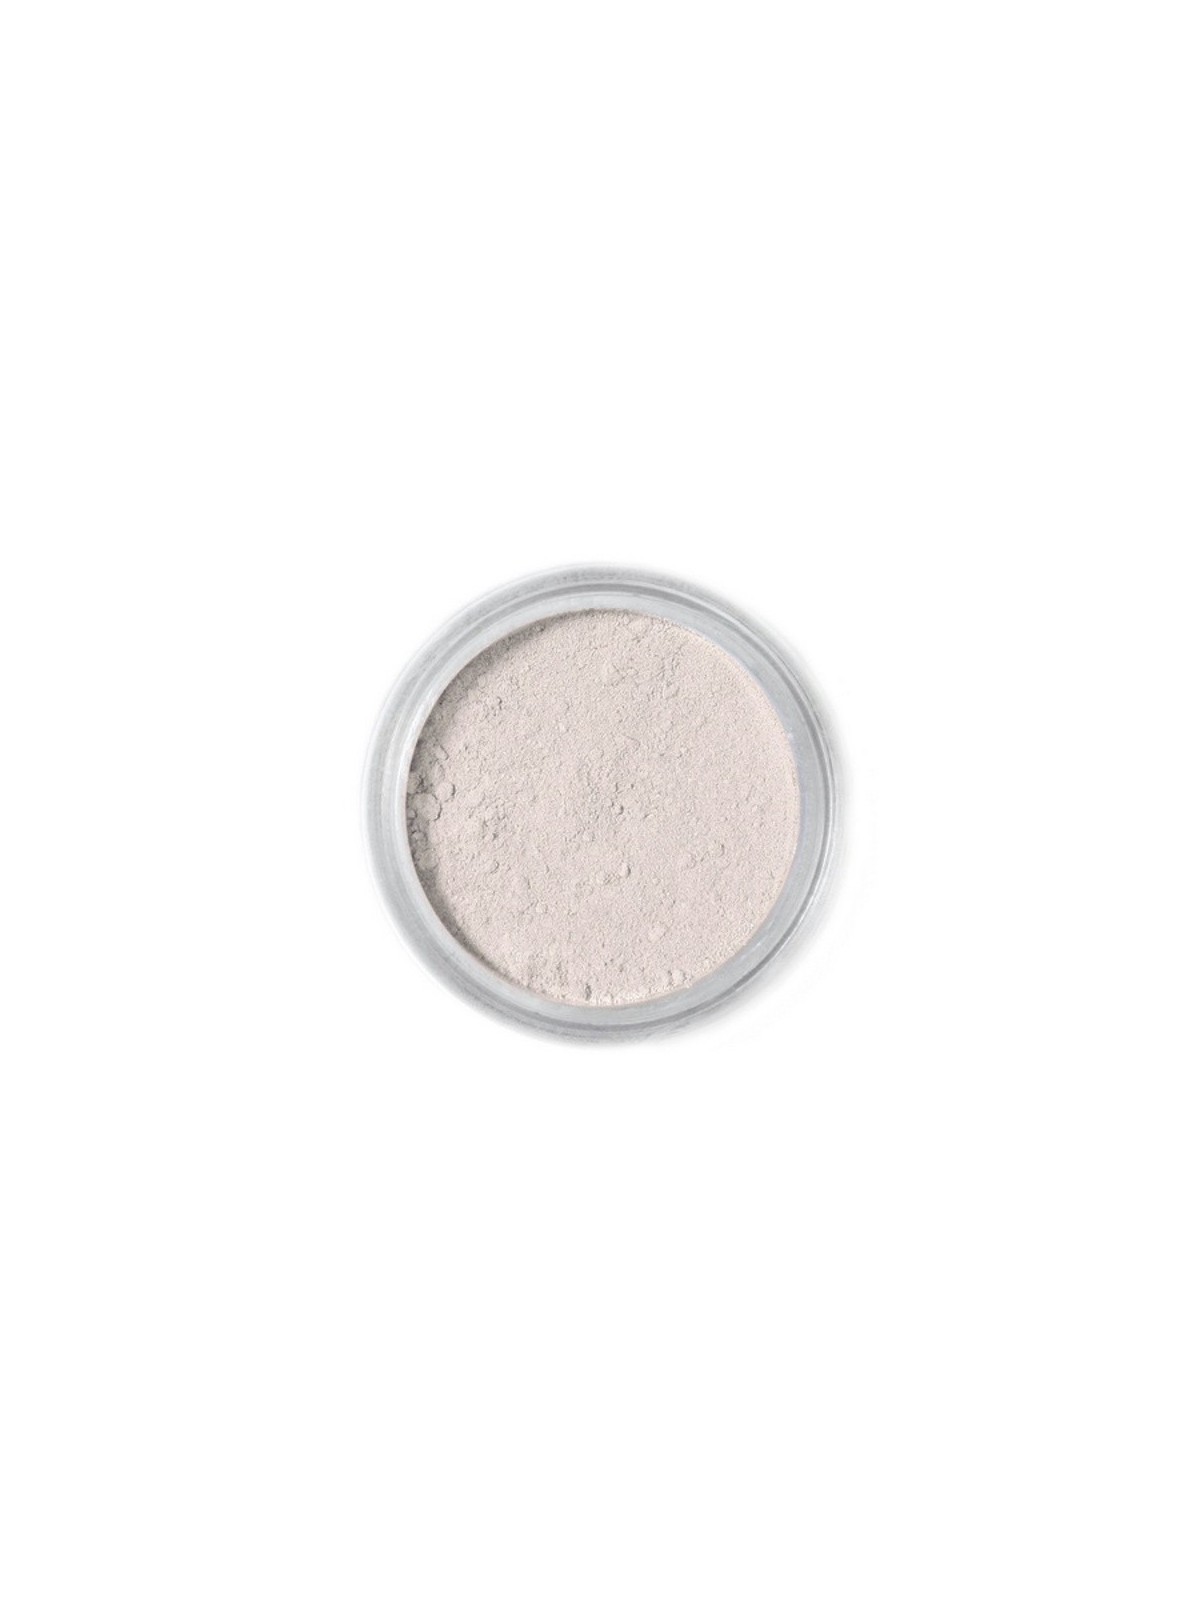 Jedlá prachová barva Fractal - Ivory, Ekrü (4 g)